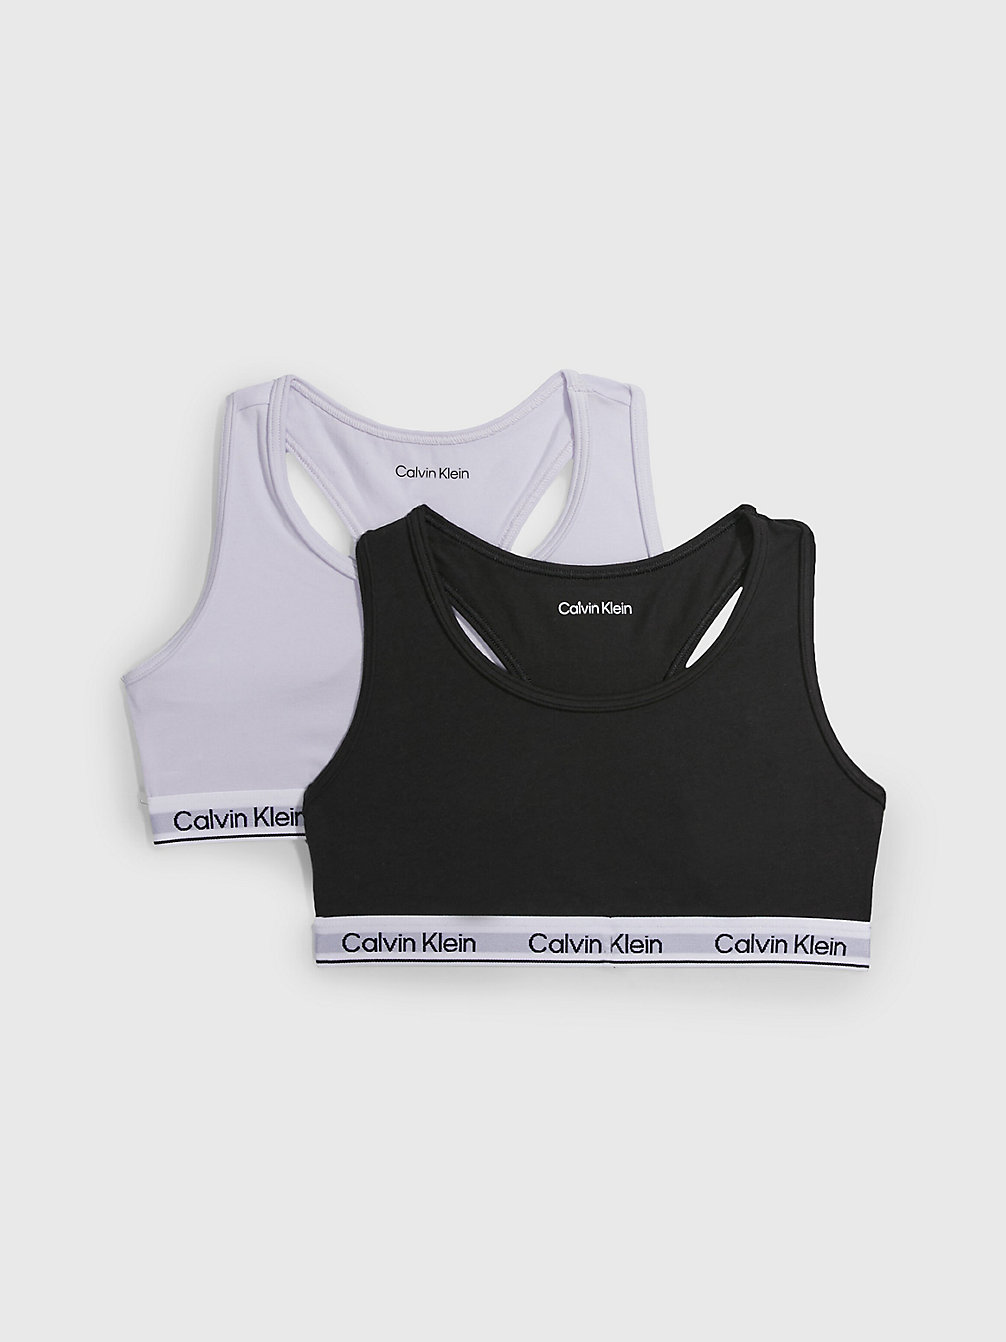 LAVENDERSPLASH/PVHBLACK 2er-Pack Bralettes Für Mädchen - Modern Cotton undefined Maedchen Calvin Klein